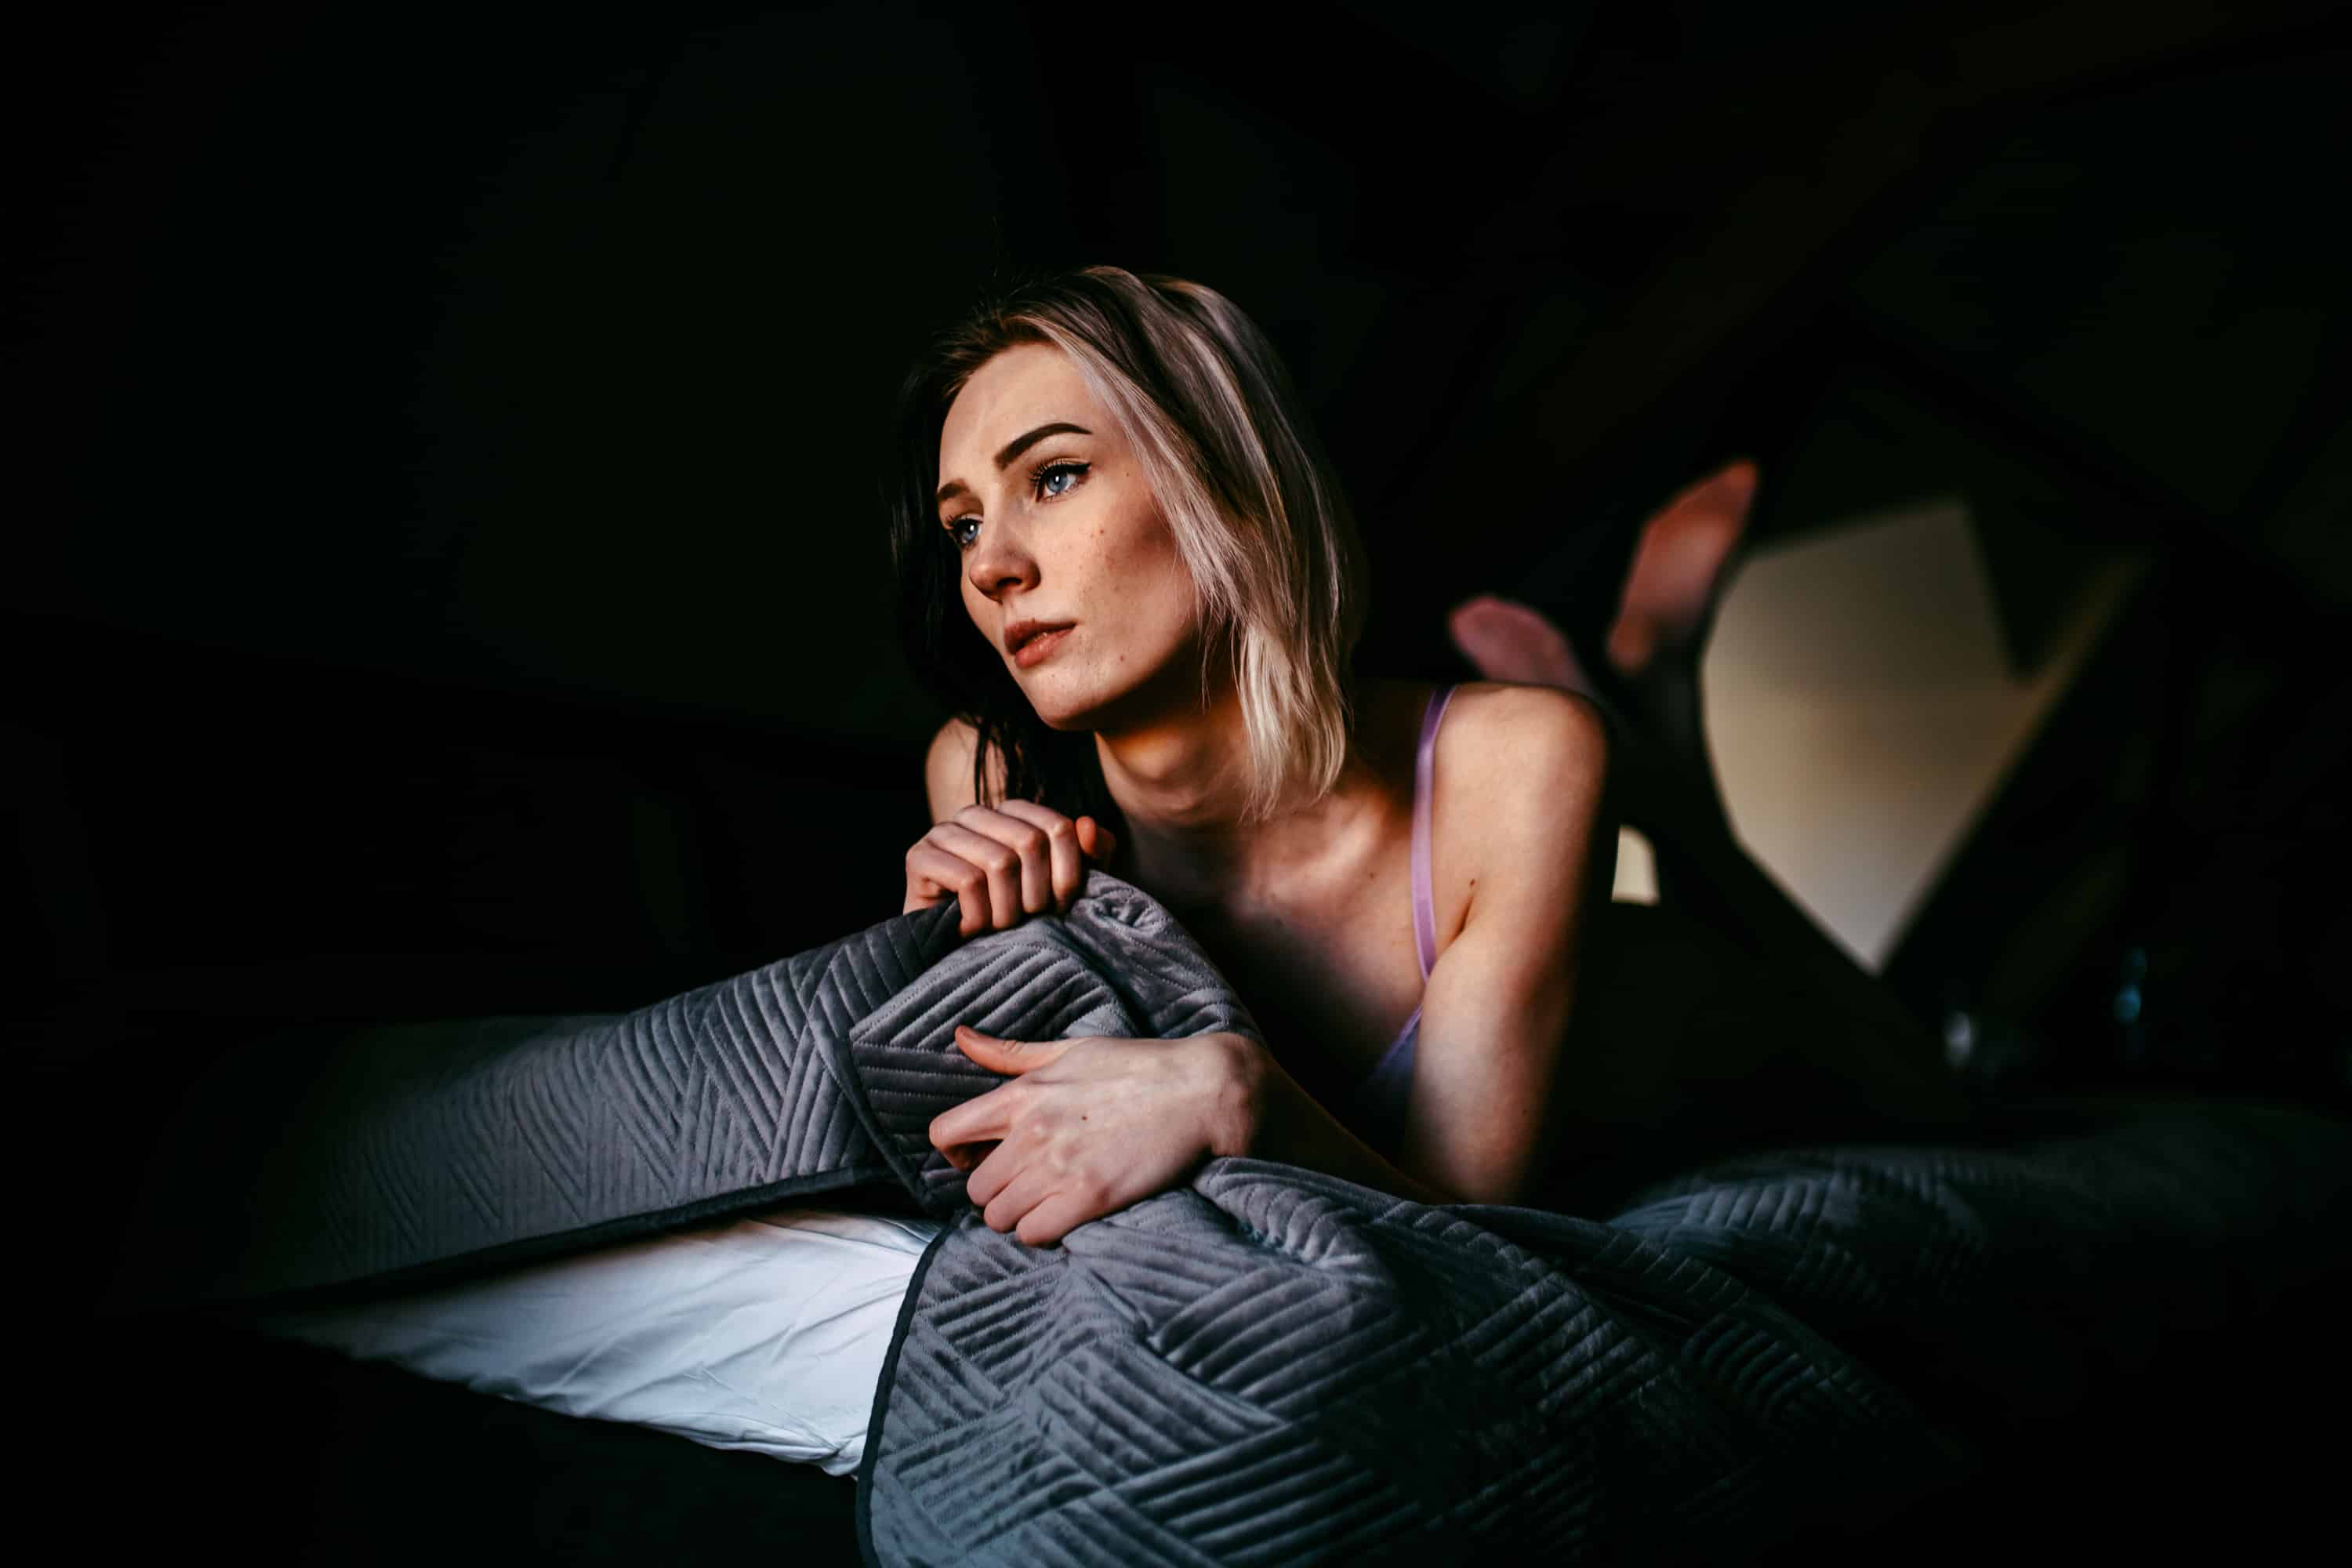 Een vrouw die een boudoirshoot doet in het donkere bed.